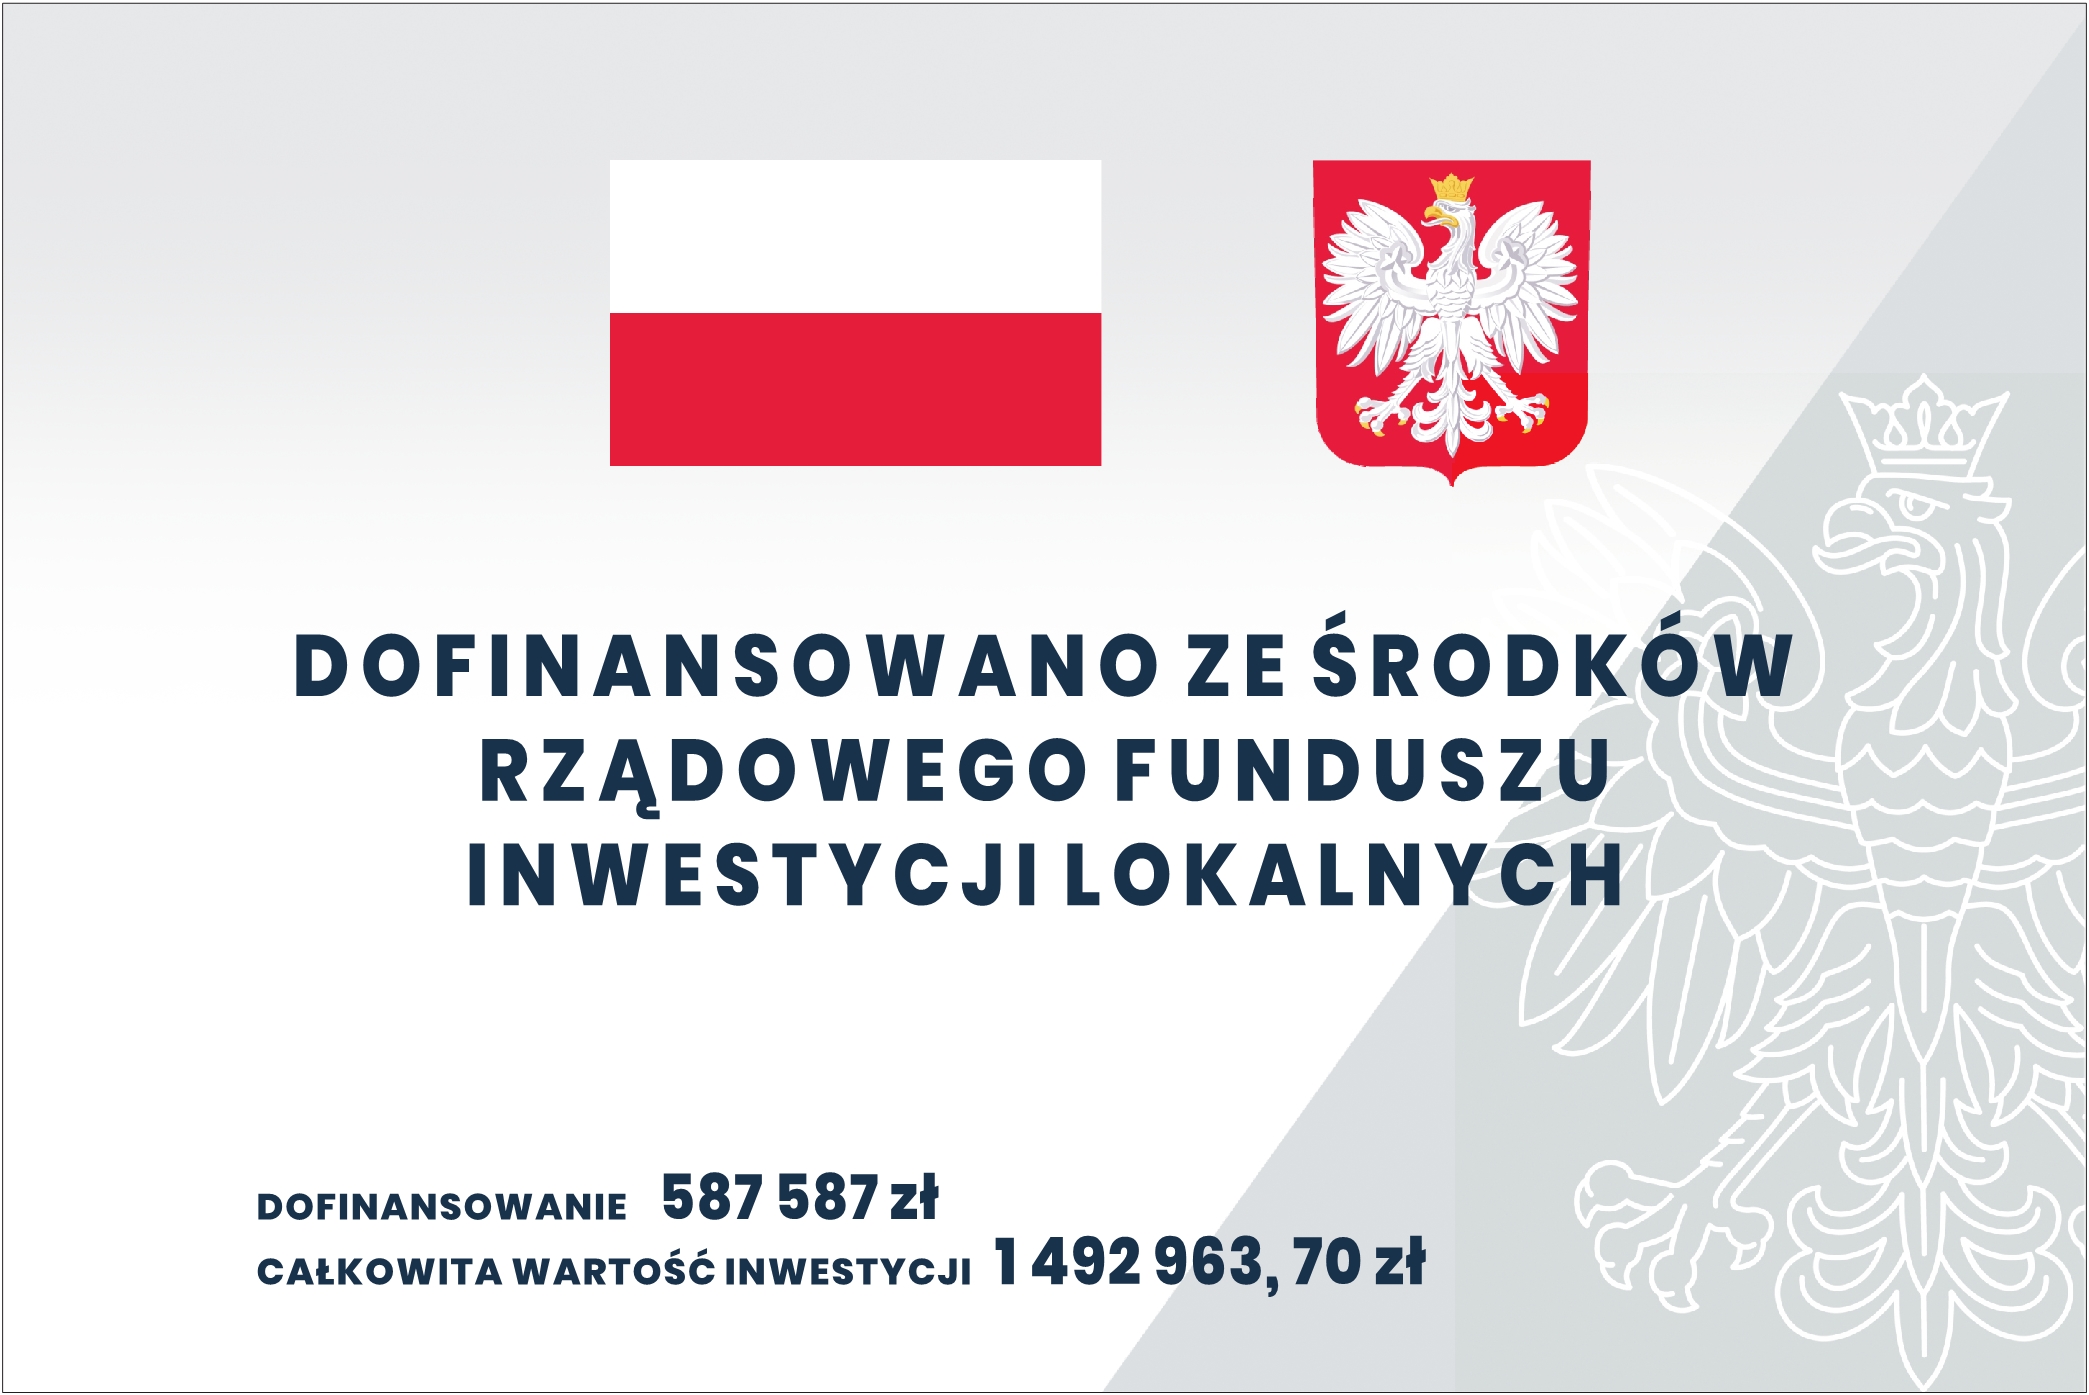 Gmina Gryfów Śląski otrzymała wsparcie finansowe ze środków Rządowego Funduszu Inwestycji Lokalnych.